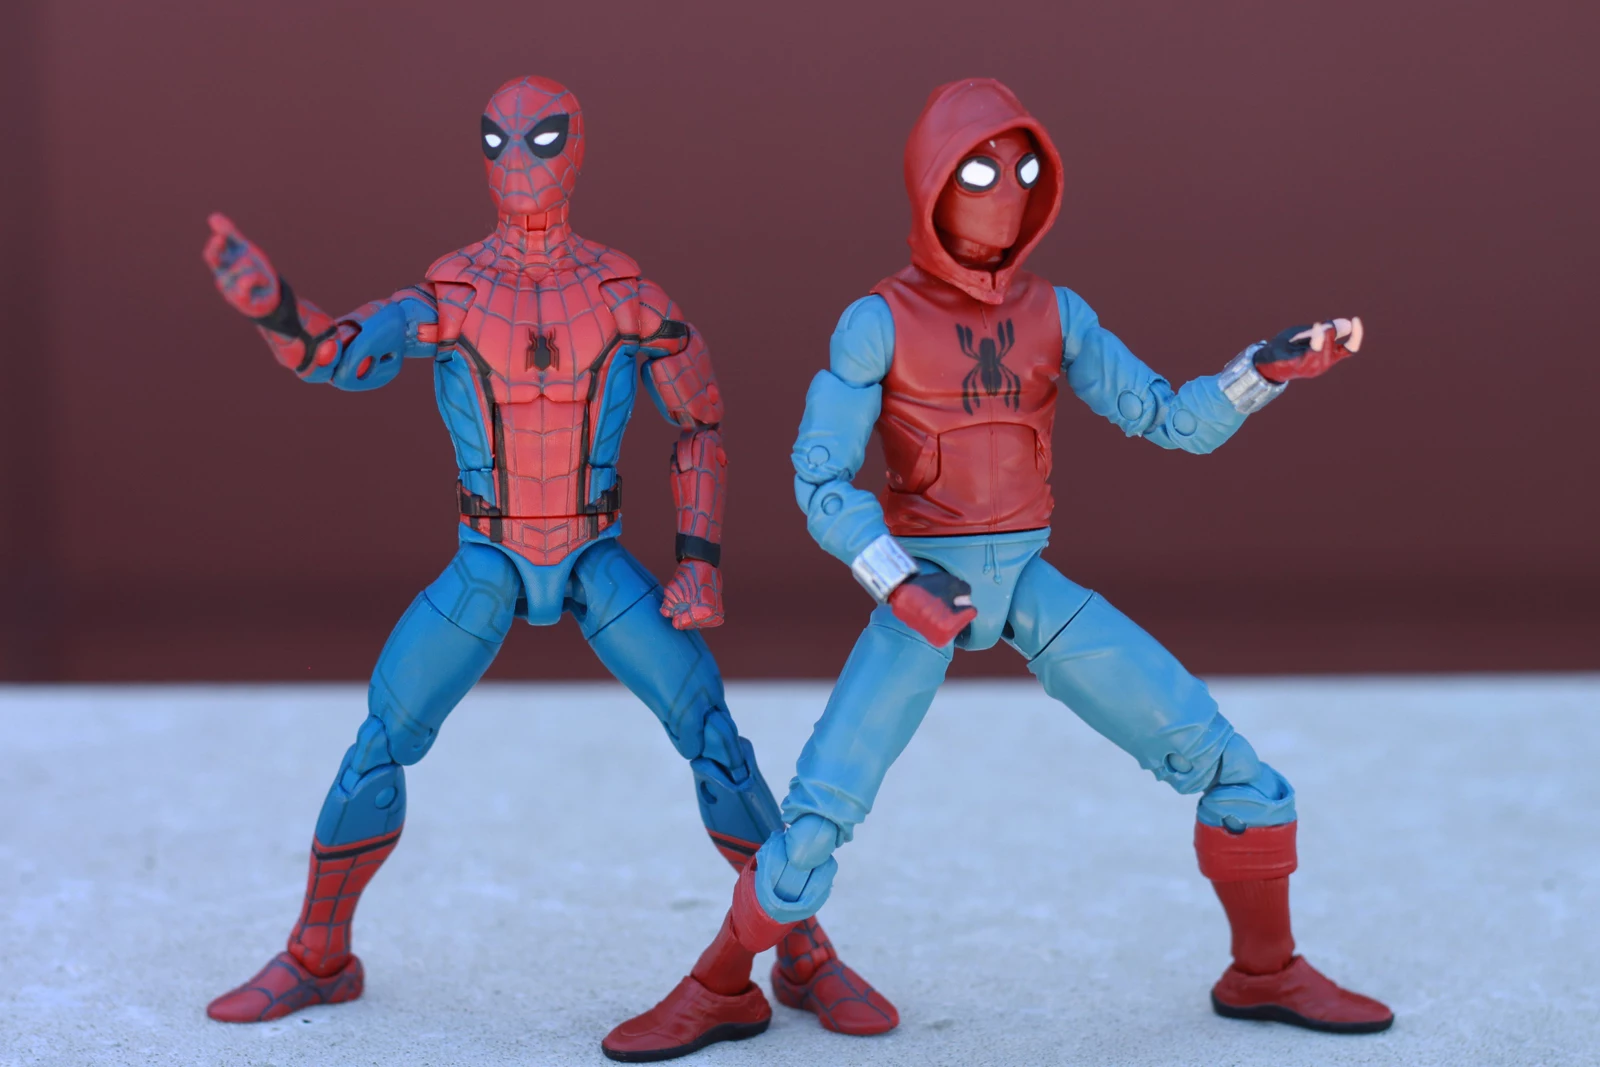 marvel legends spider man homemade suit